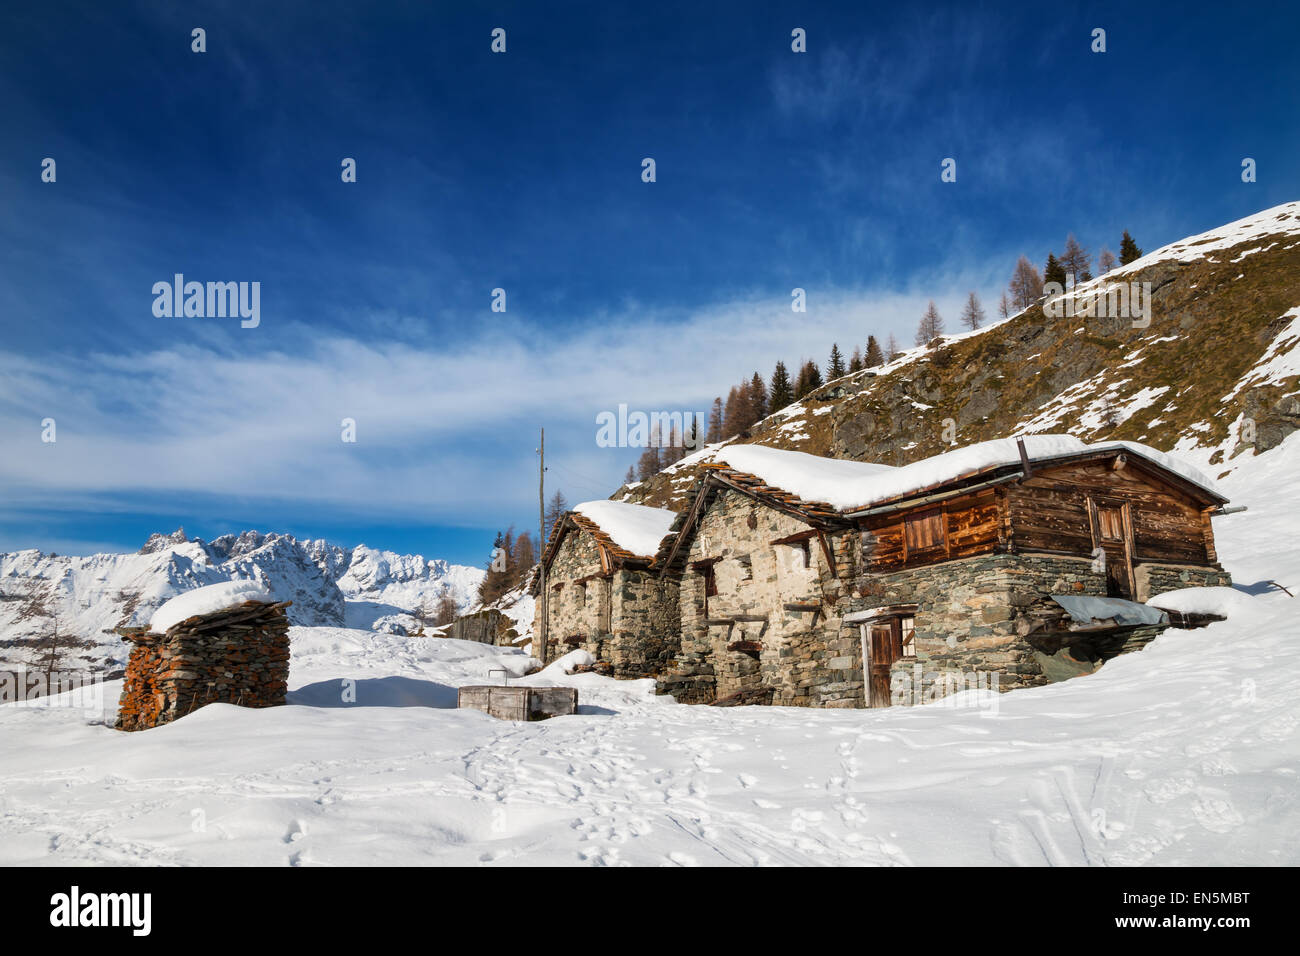 Abbandonato Chalet tipico nelle alpi italiane sotto il cielo blu con alcune nuvole bianche Foto Stock